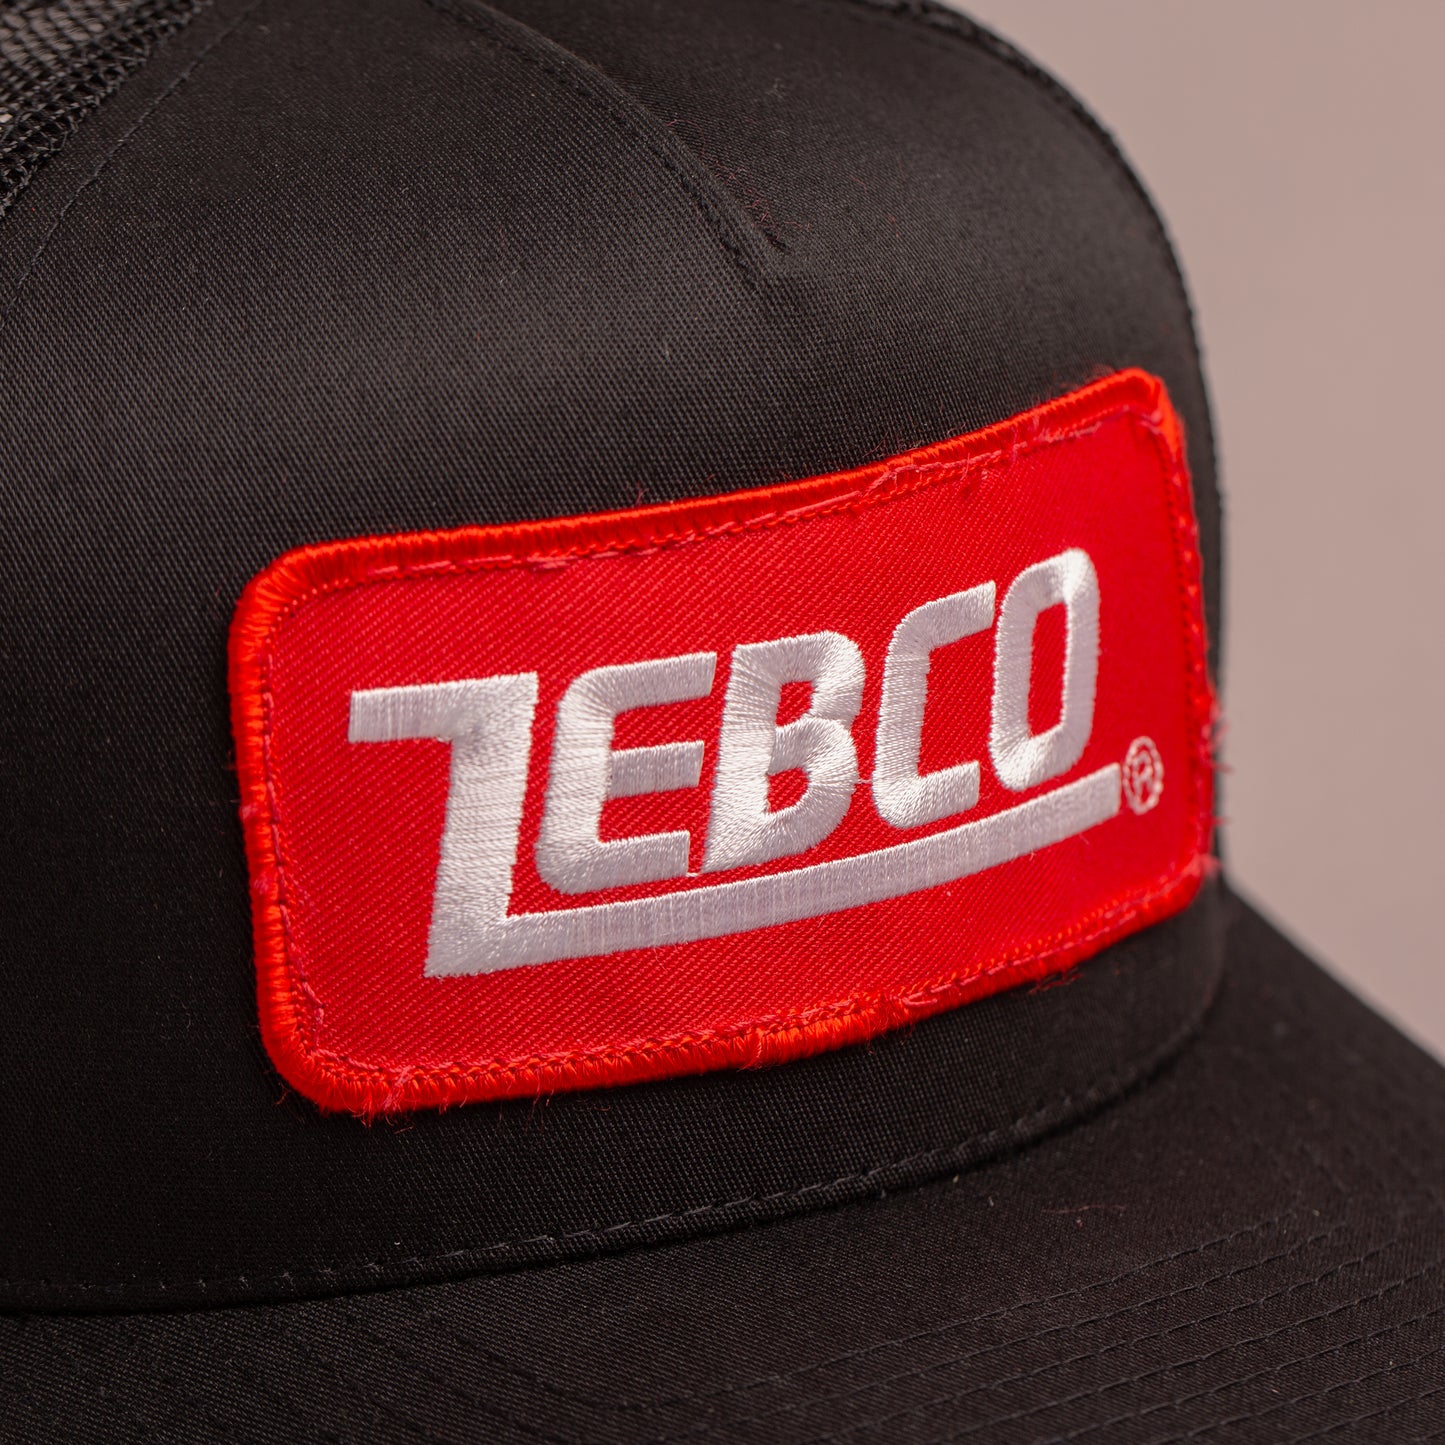 Zebco Black Trucker Cap